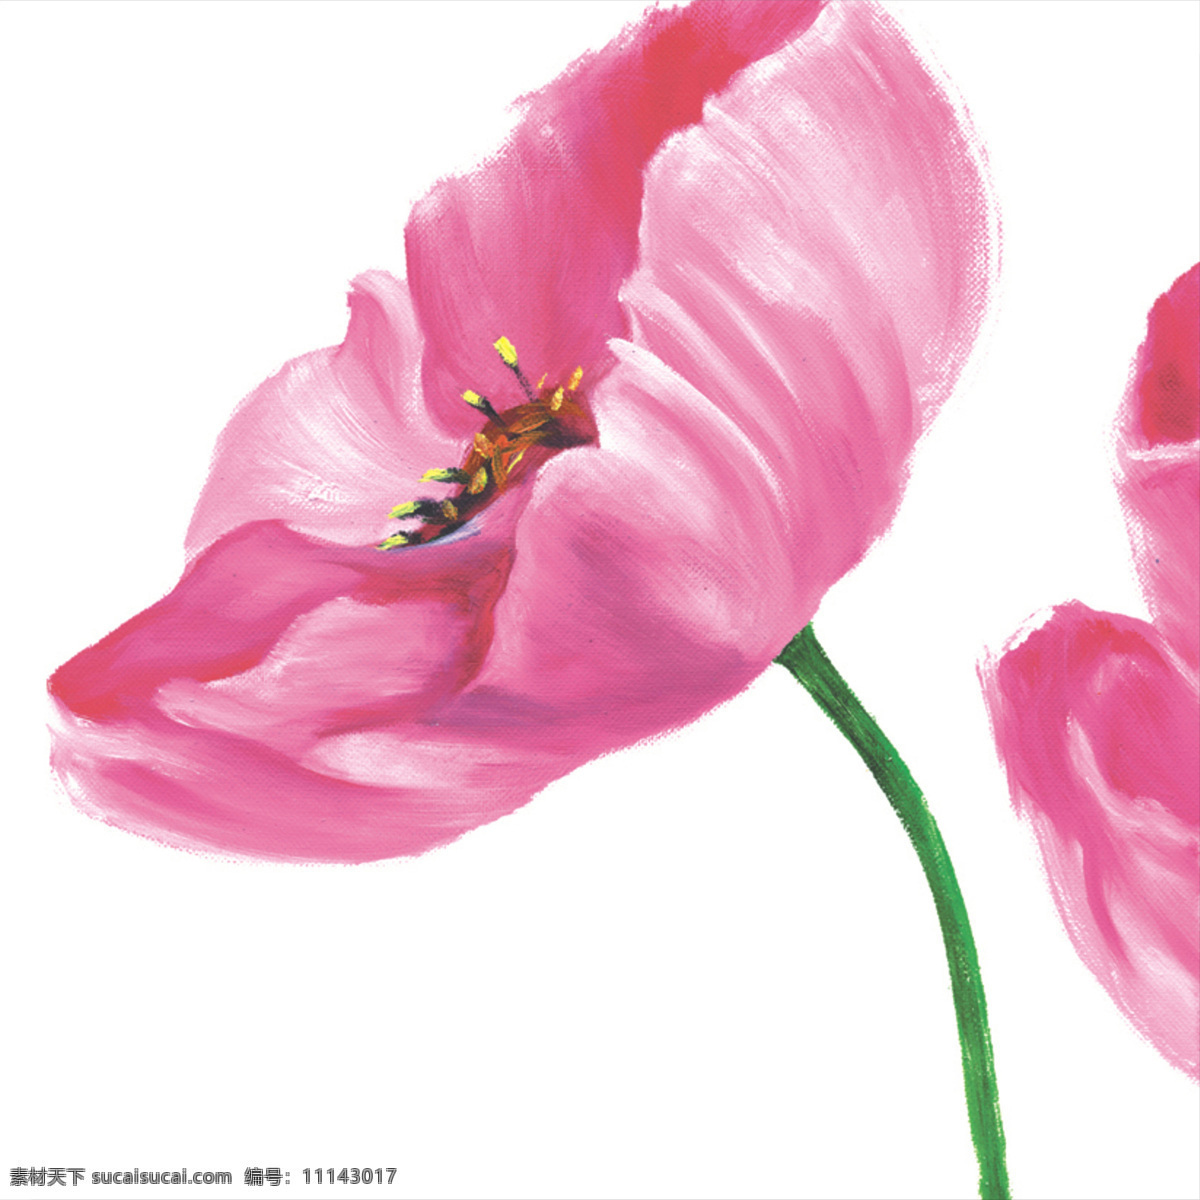 二联 油画 二联画 粉红色 花朵 花儿 联画 无框画 艺术风格 罂粟 郁金香 两联画 市内装饰 装饰画 植物 装饰素材